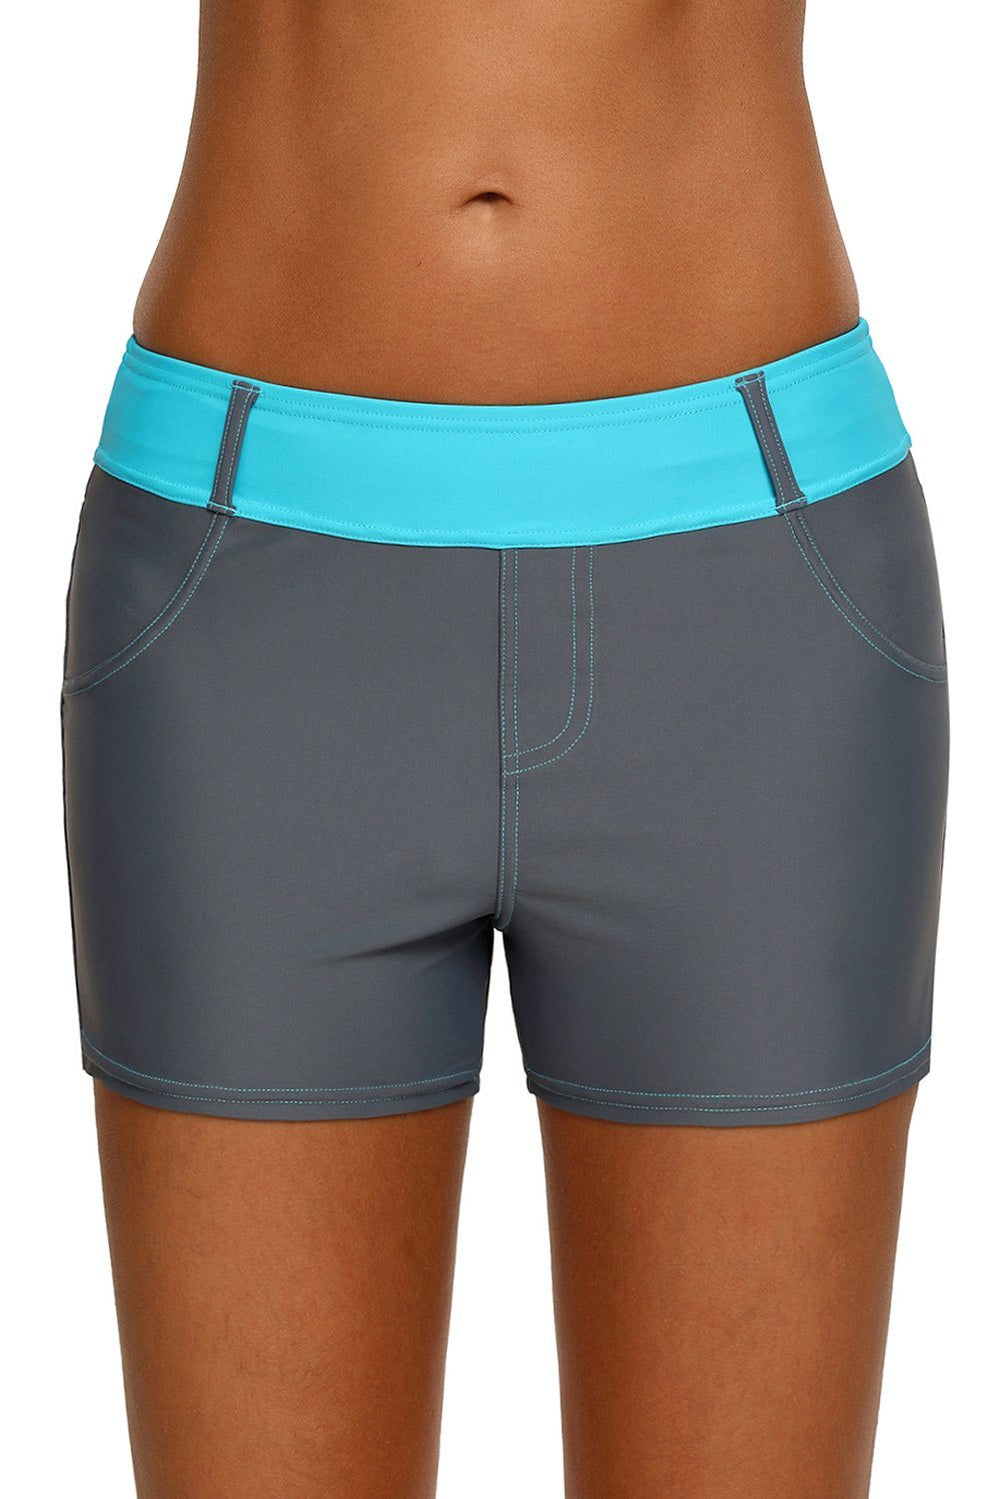 Women Grey Swim Board Shorts Blue Waistband Tankini Bottoms